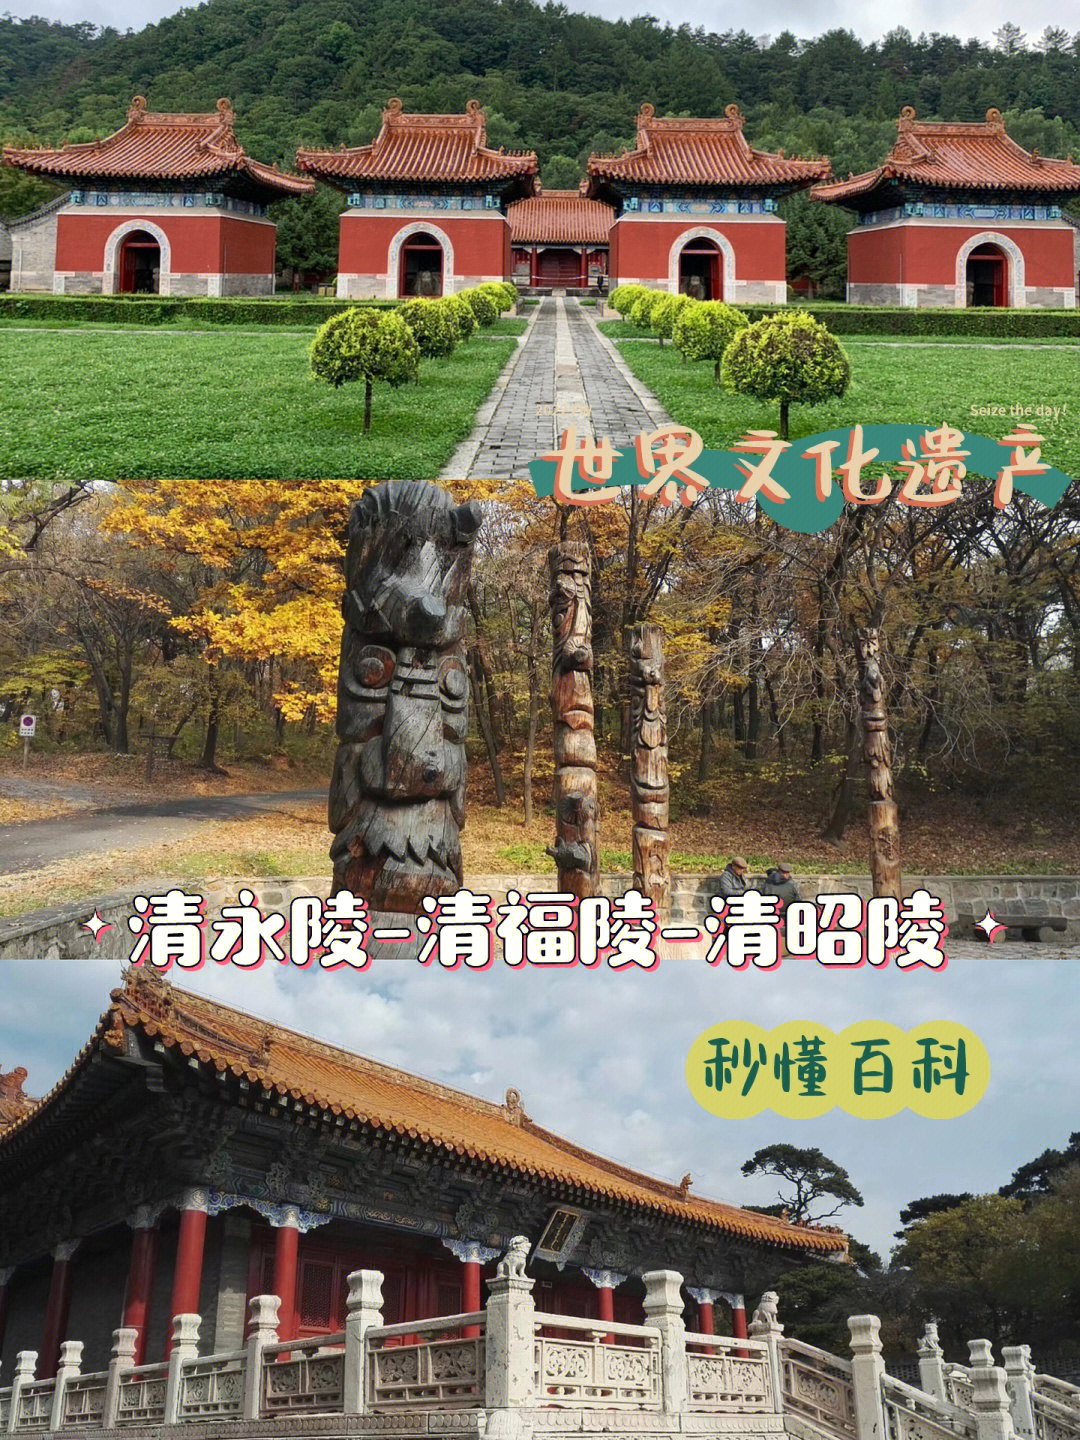 清朝皇陵,从建陵年代和地理位置,可分为盛京三陵,清东陵和清西陵三个